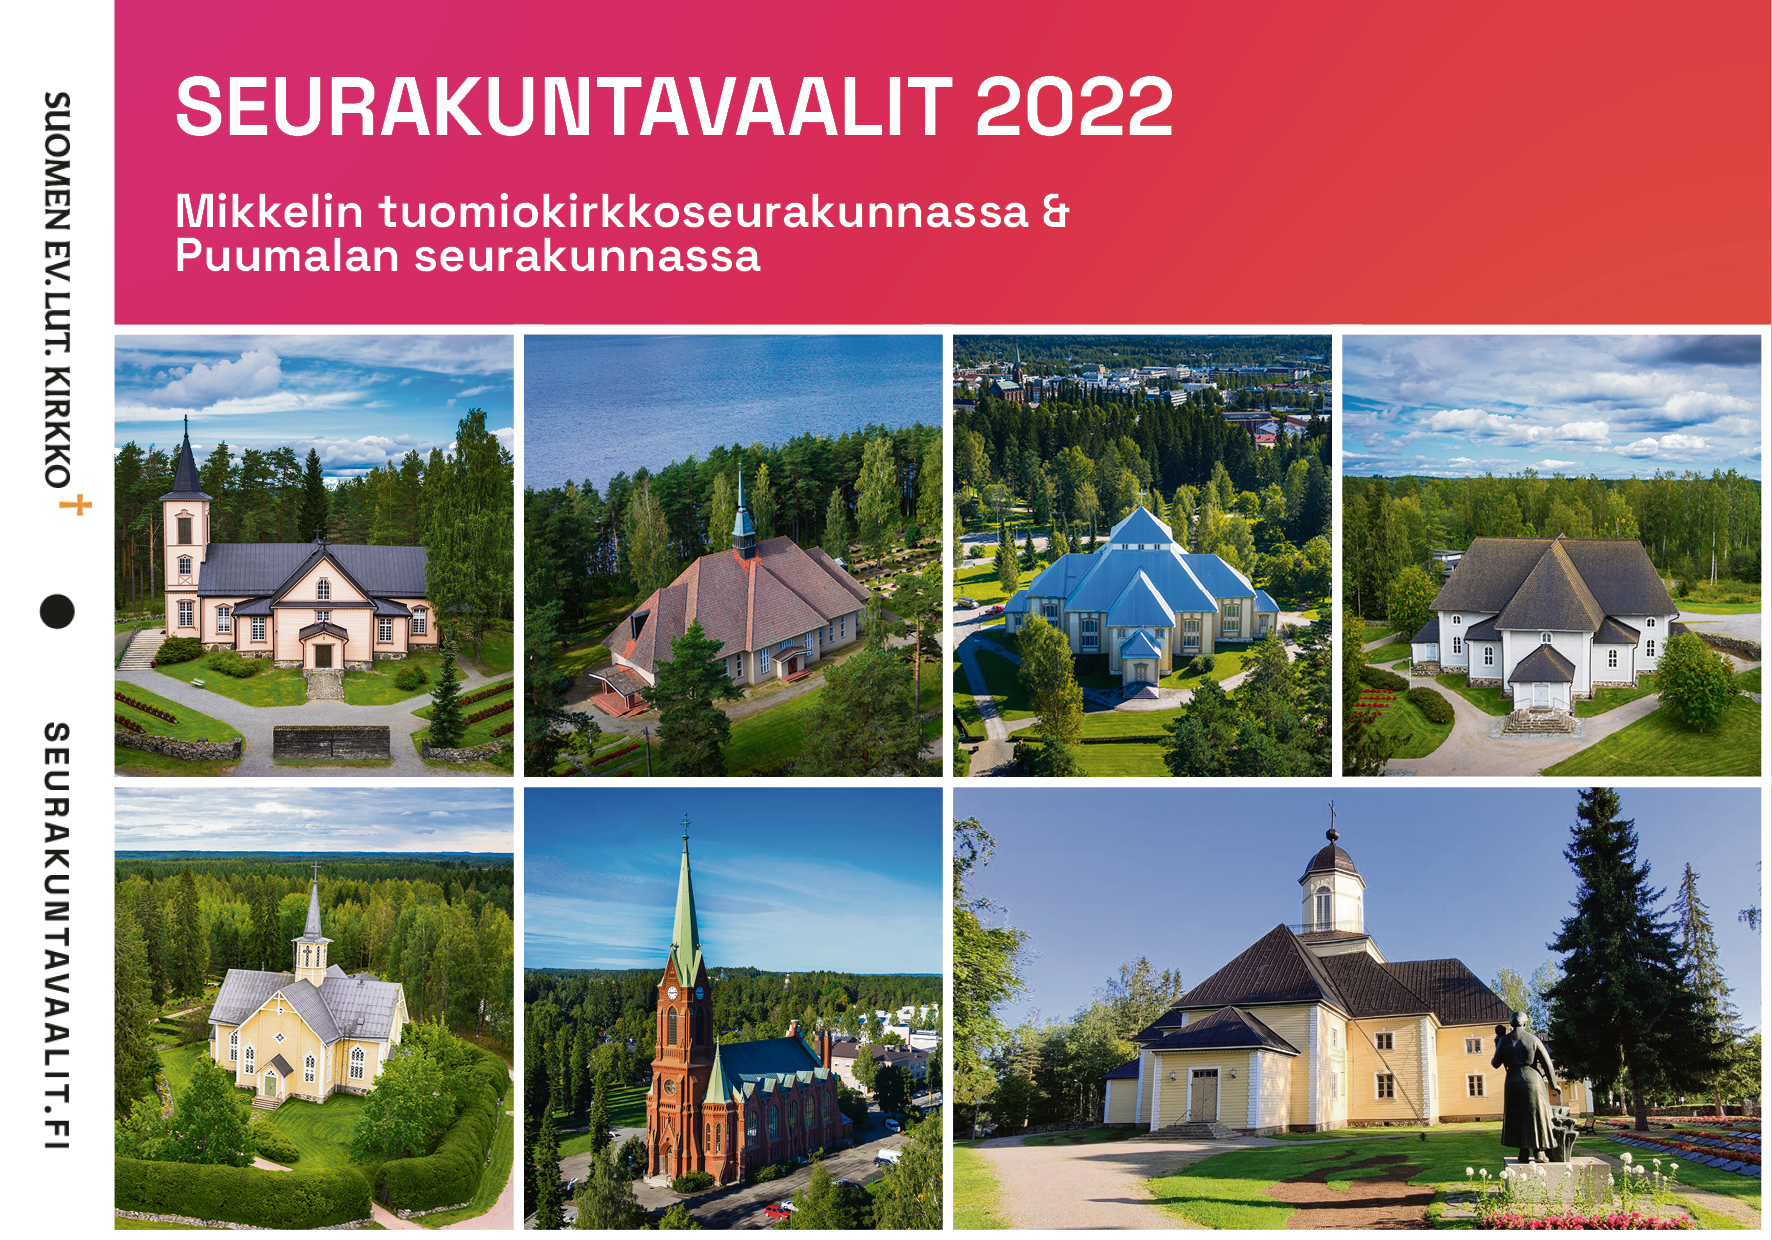 Seurakuntavaalien mainoskuva, jossa mukana kaikki Mikkelin tuomiokirkkoseurakunnan kirkot sekä Puumala.